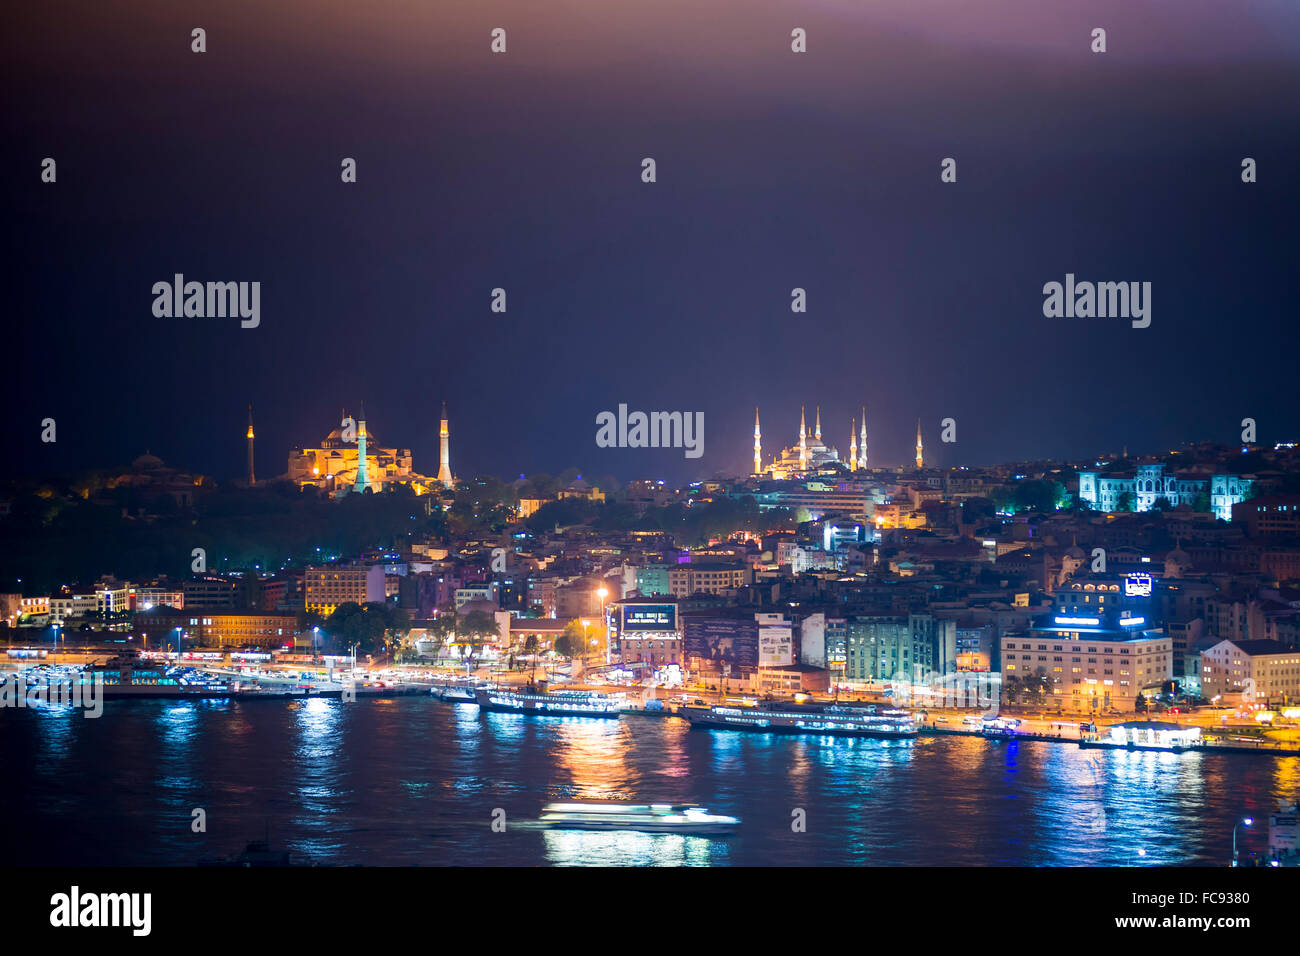 Blaue Moschee und Hagia Sophia (Aya Sofya) in der Nacht gesehen von der Galata-Turm über den Bosporus, Istanbul, Türkei Stockfoto